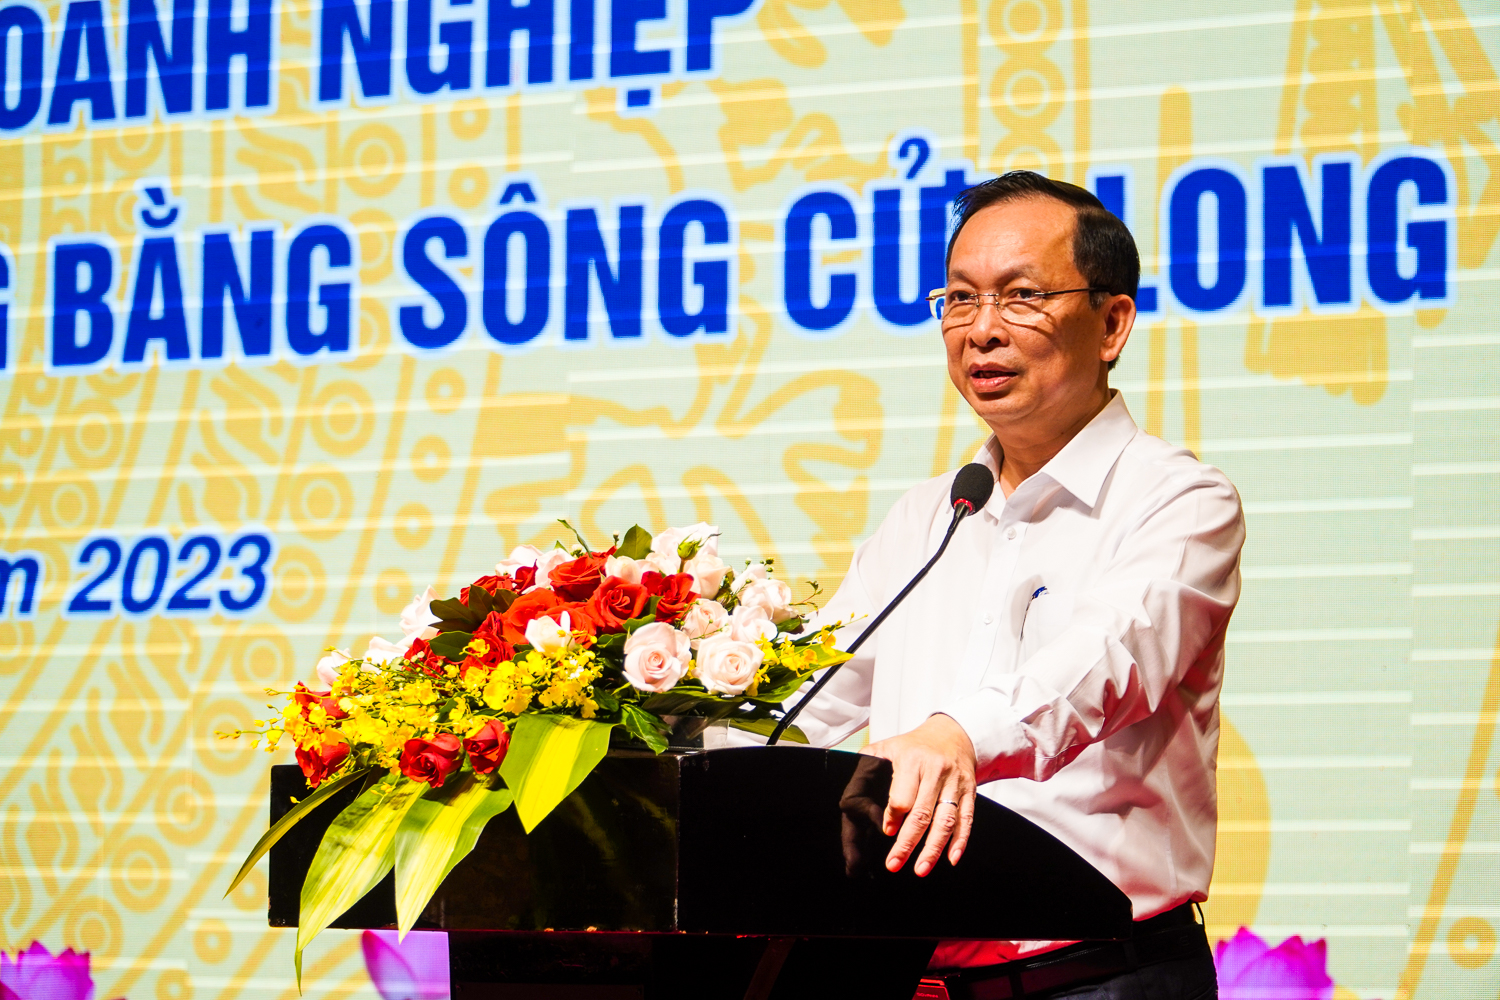 Phó Thống đốc Thường trực Ngân hàng Nhà nước Việt Nam Đào Minh Tú yêu cầu các ngân hàng nghiêm túc, linh hoạt trong hoạt động cho vay vốn, gắn với mùa vụ sản xuất, tạo điều kiện cho doanh nghiệp. Ảnh: Kim Anh.